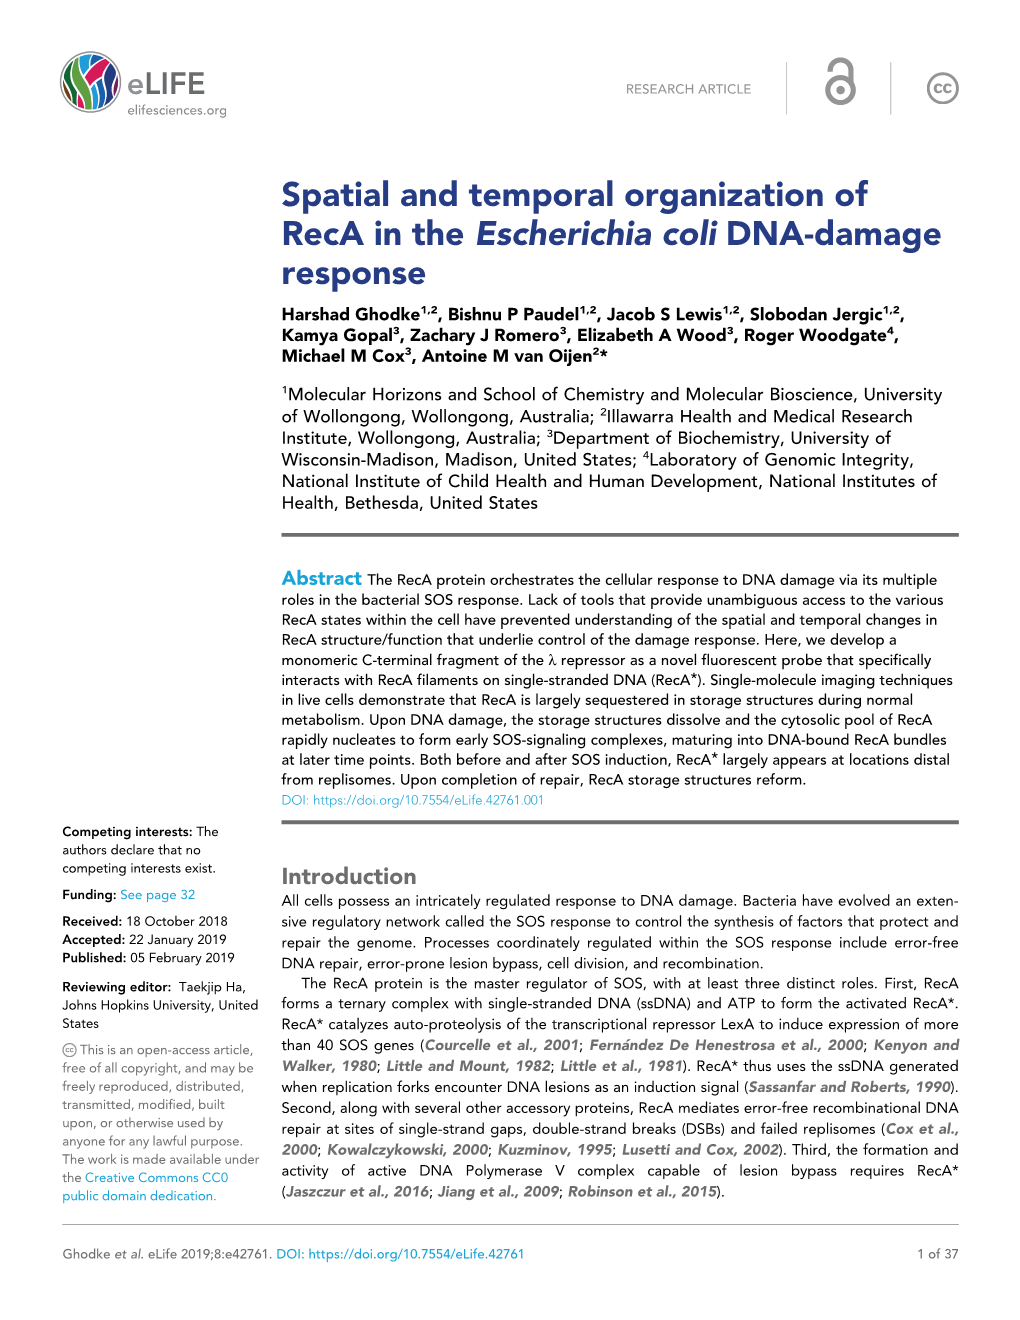 Spatial and Temporal Organization of Reca in the Escherichia Coli